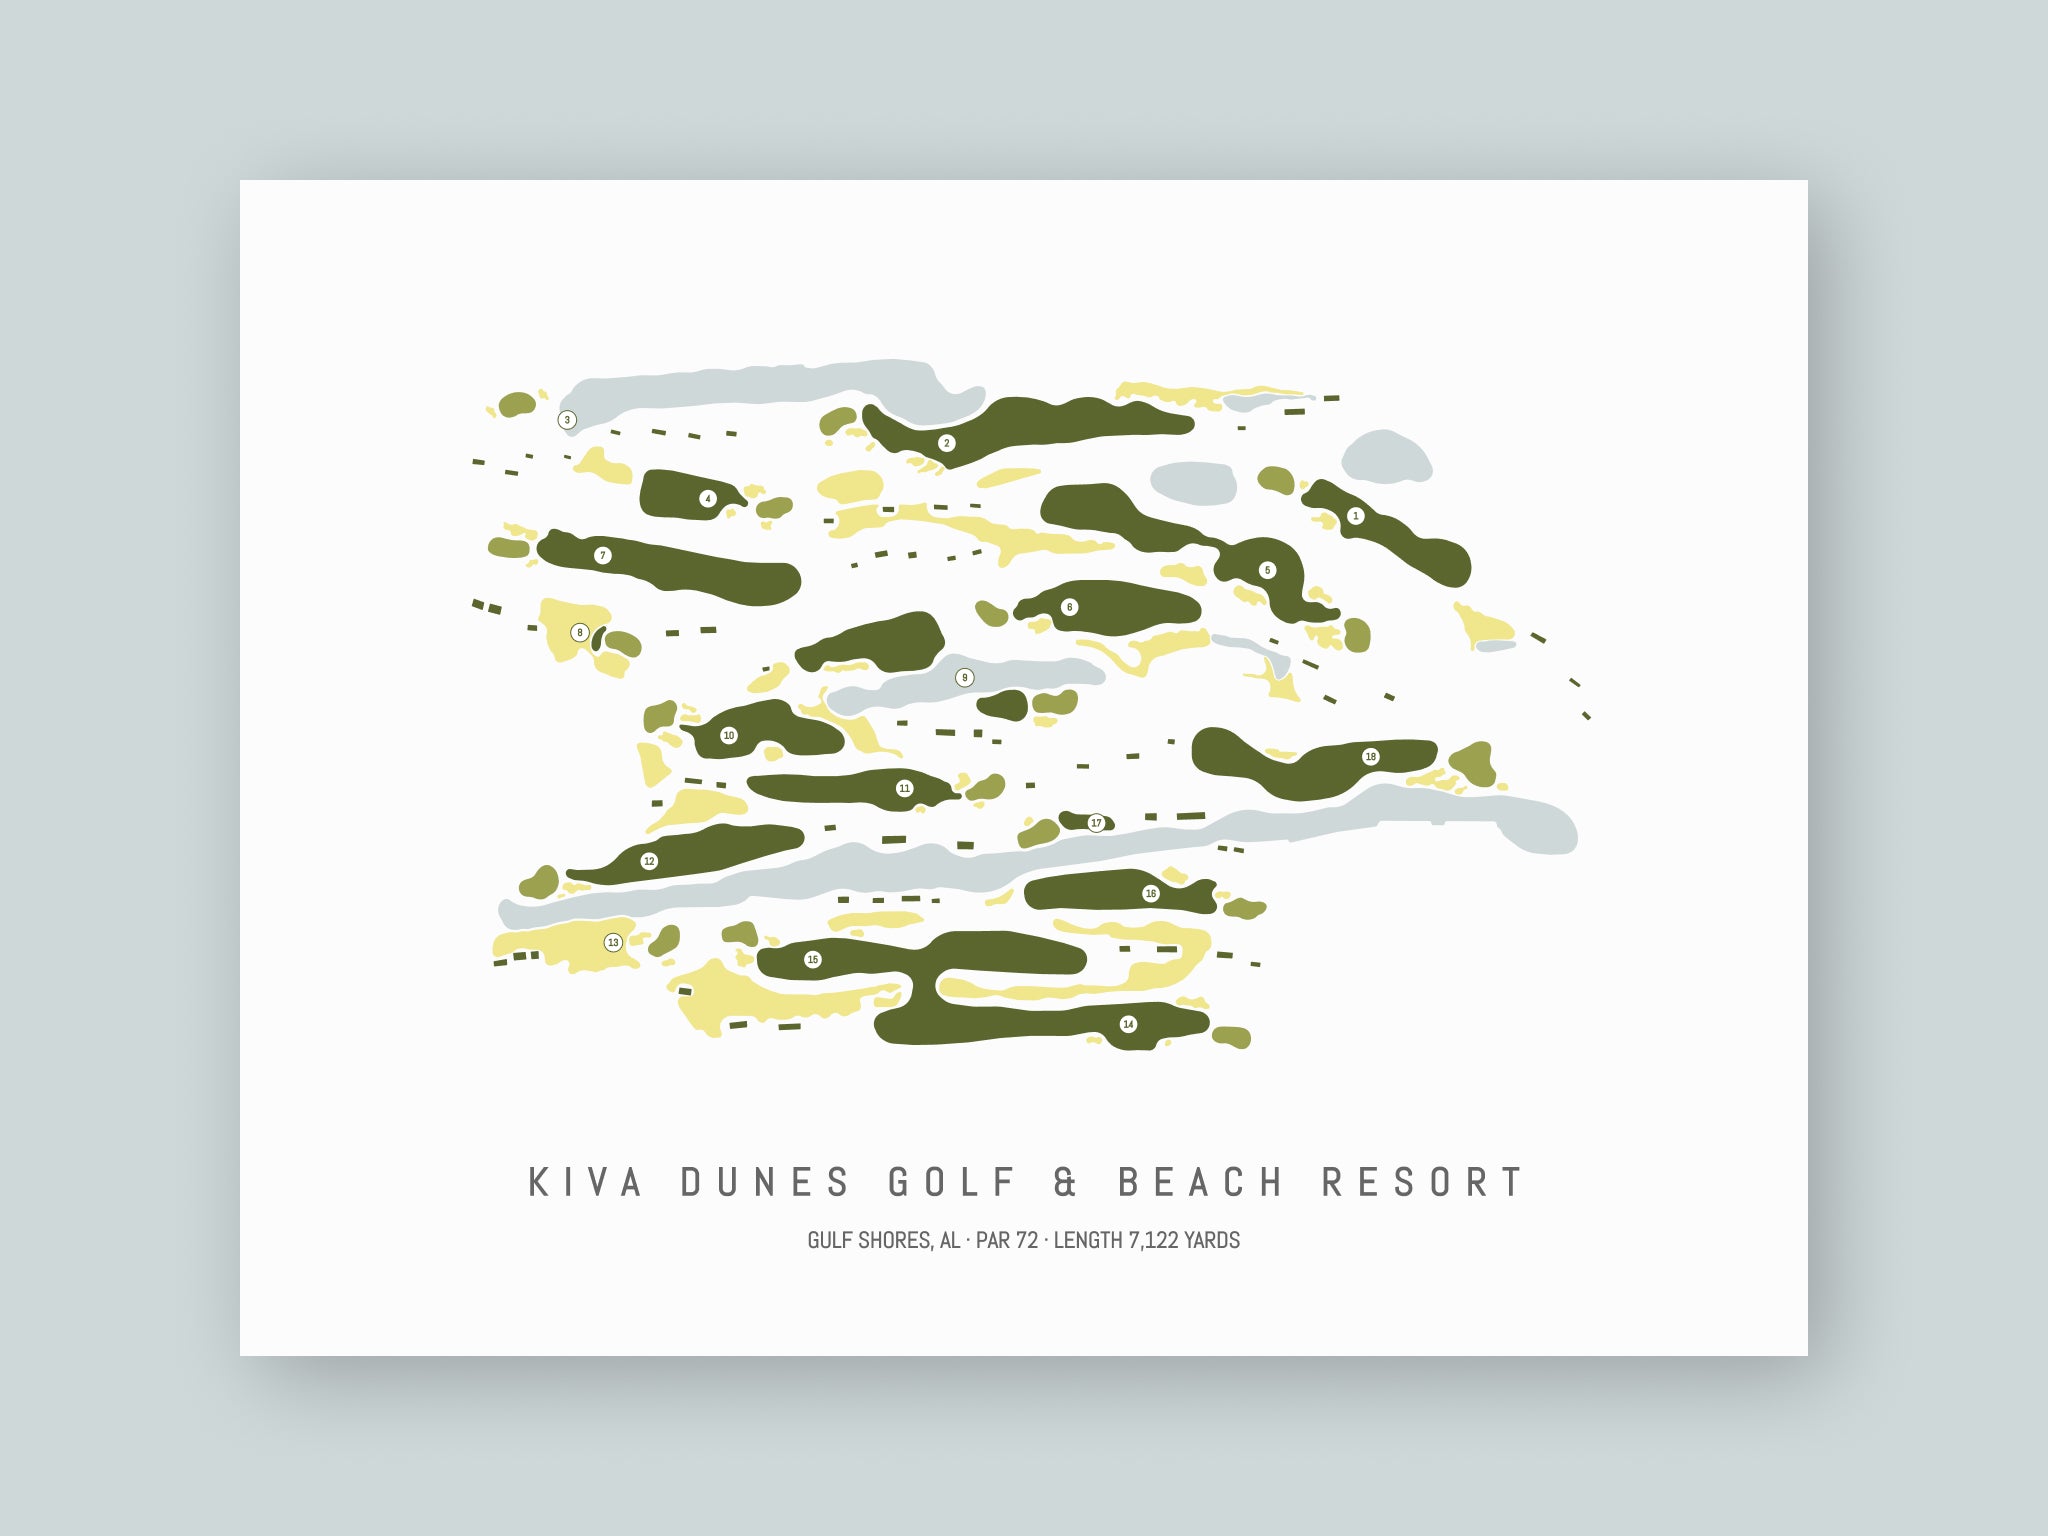 Kiva Dunes Golf & Beach Resort